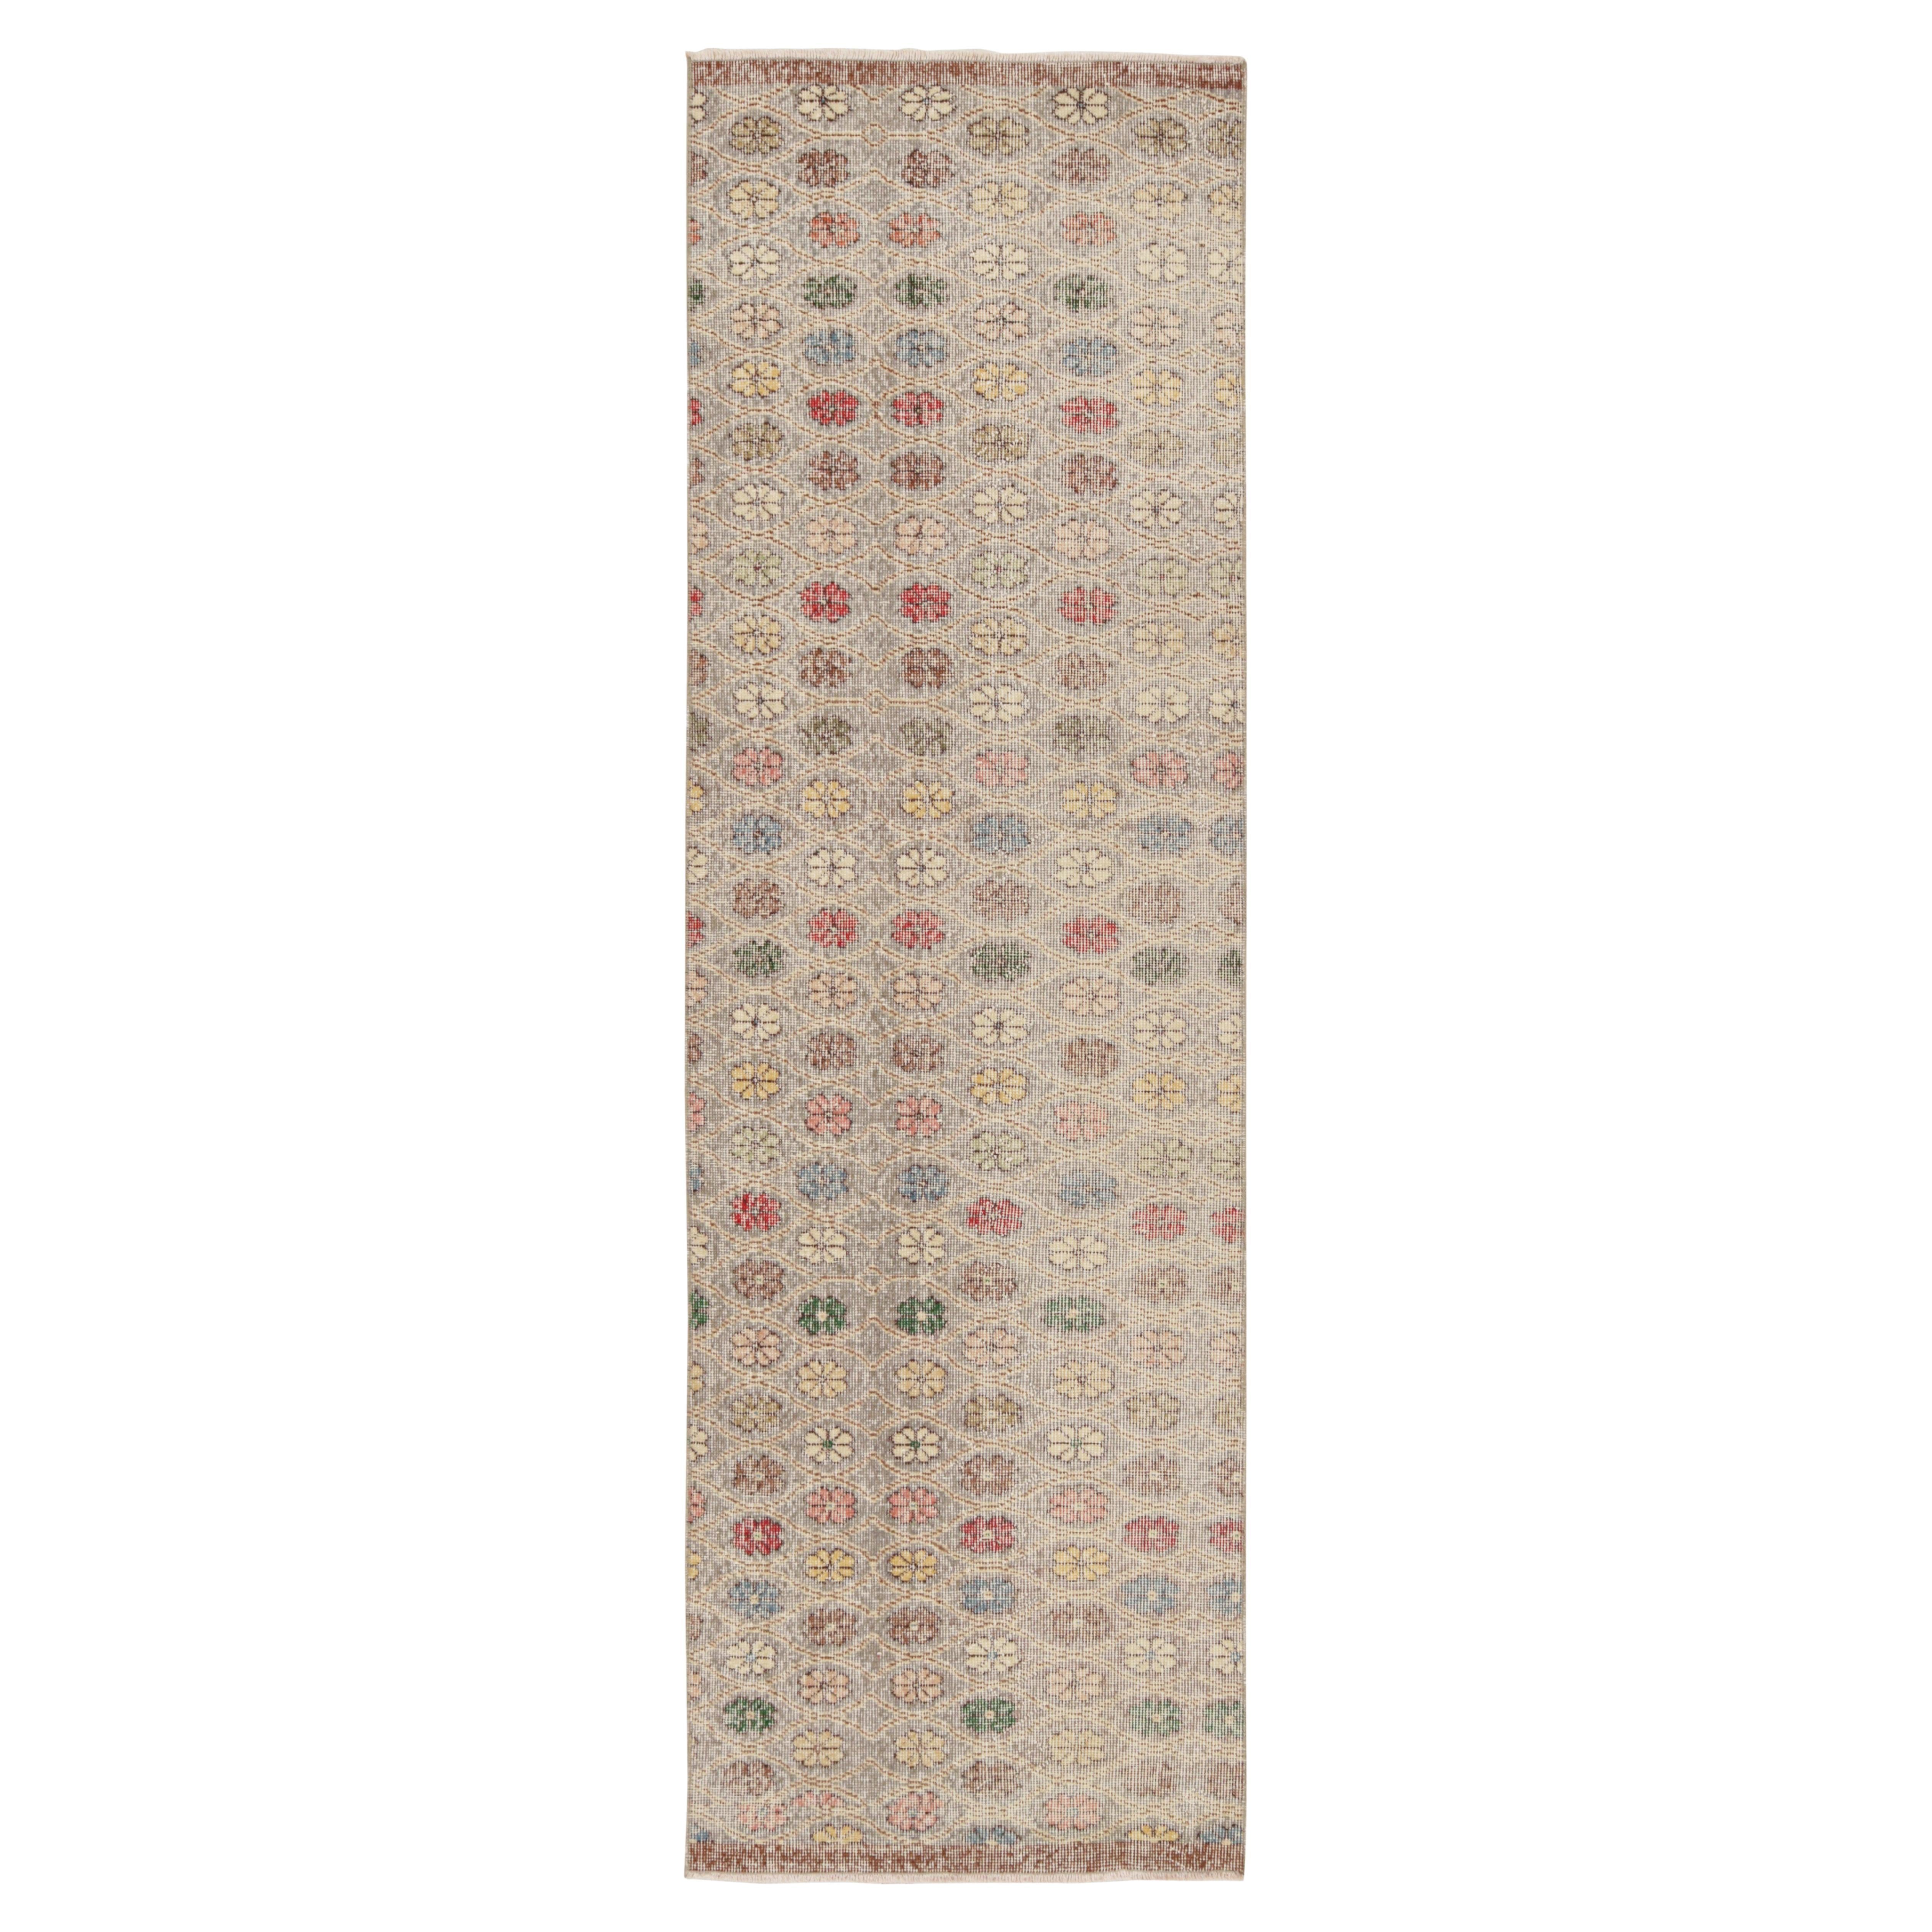 Vintage Midcentury Wool Runner with Multi-Color Floral Pattern by Rug & Kilim